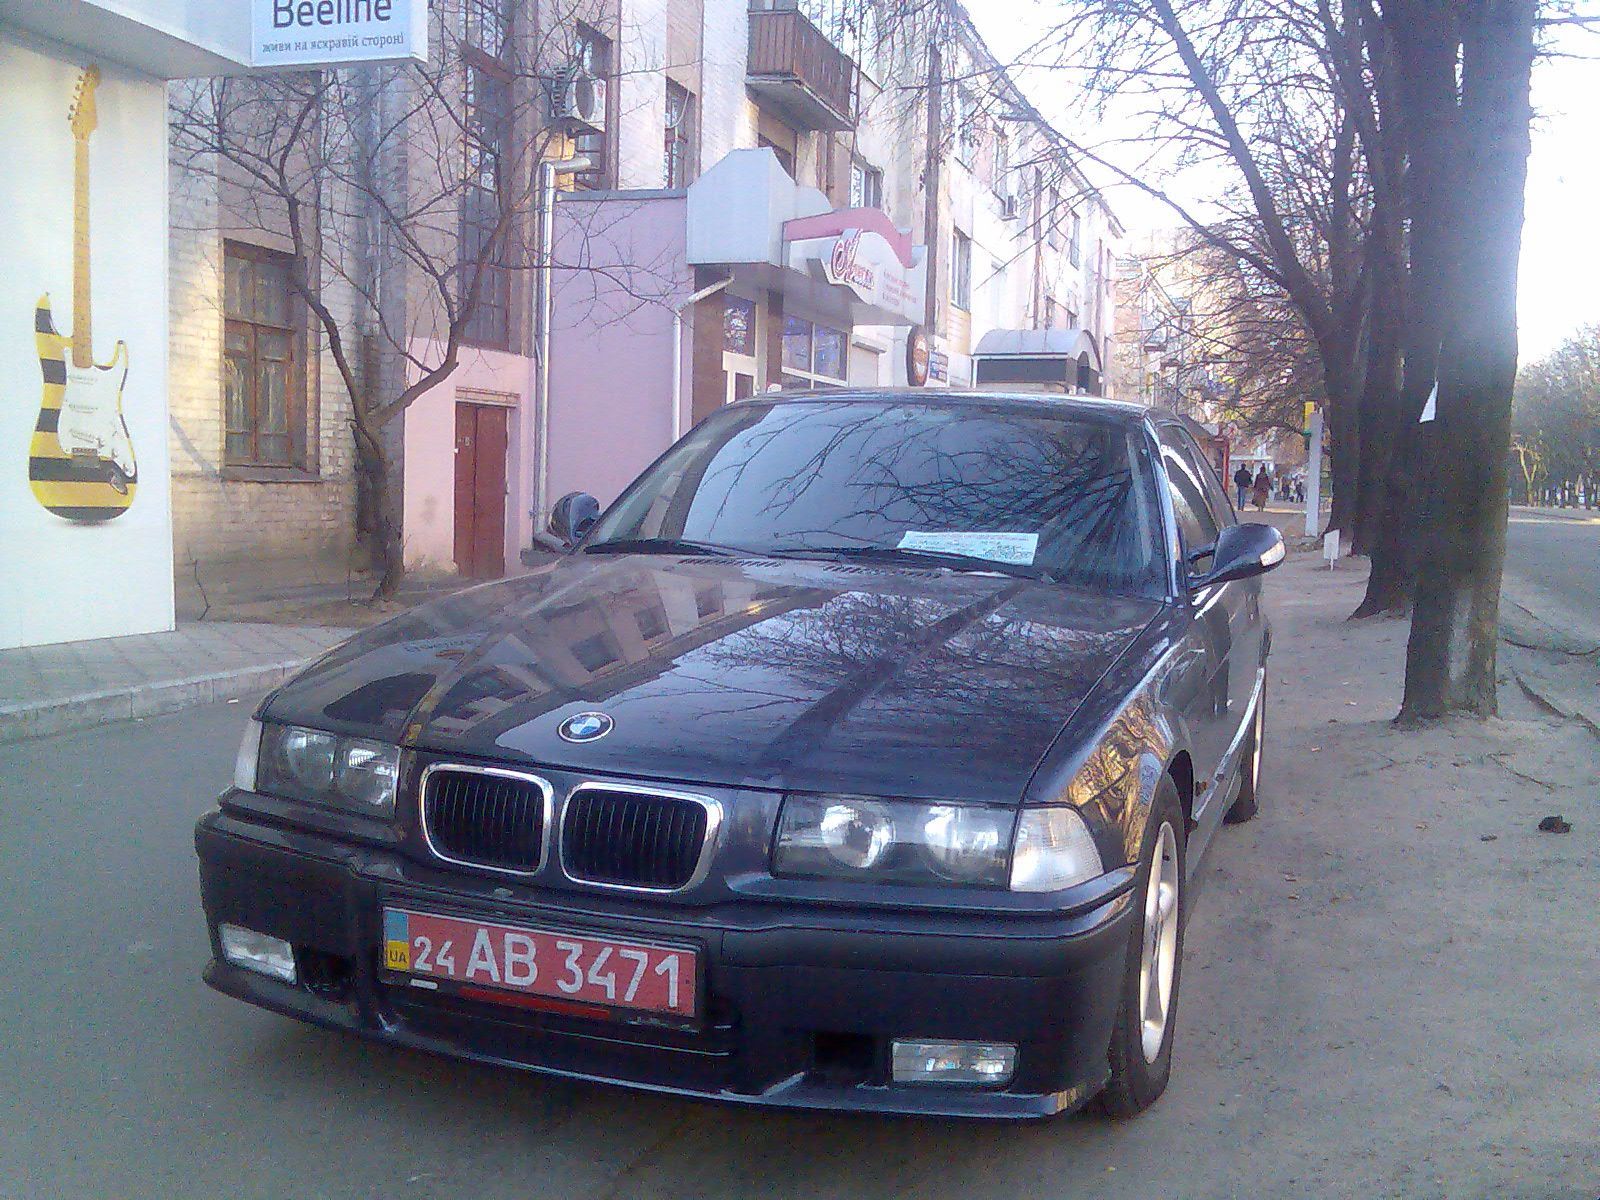 BMW 320i loaded_210.jpg